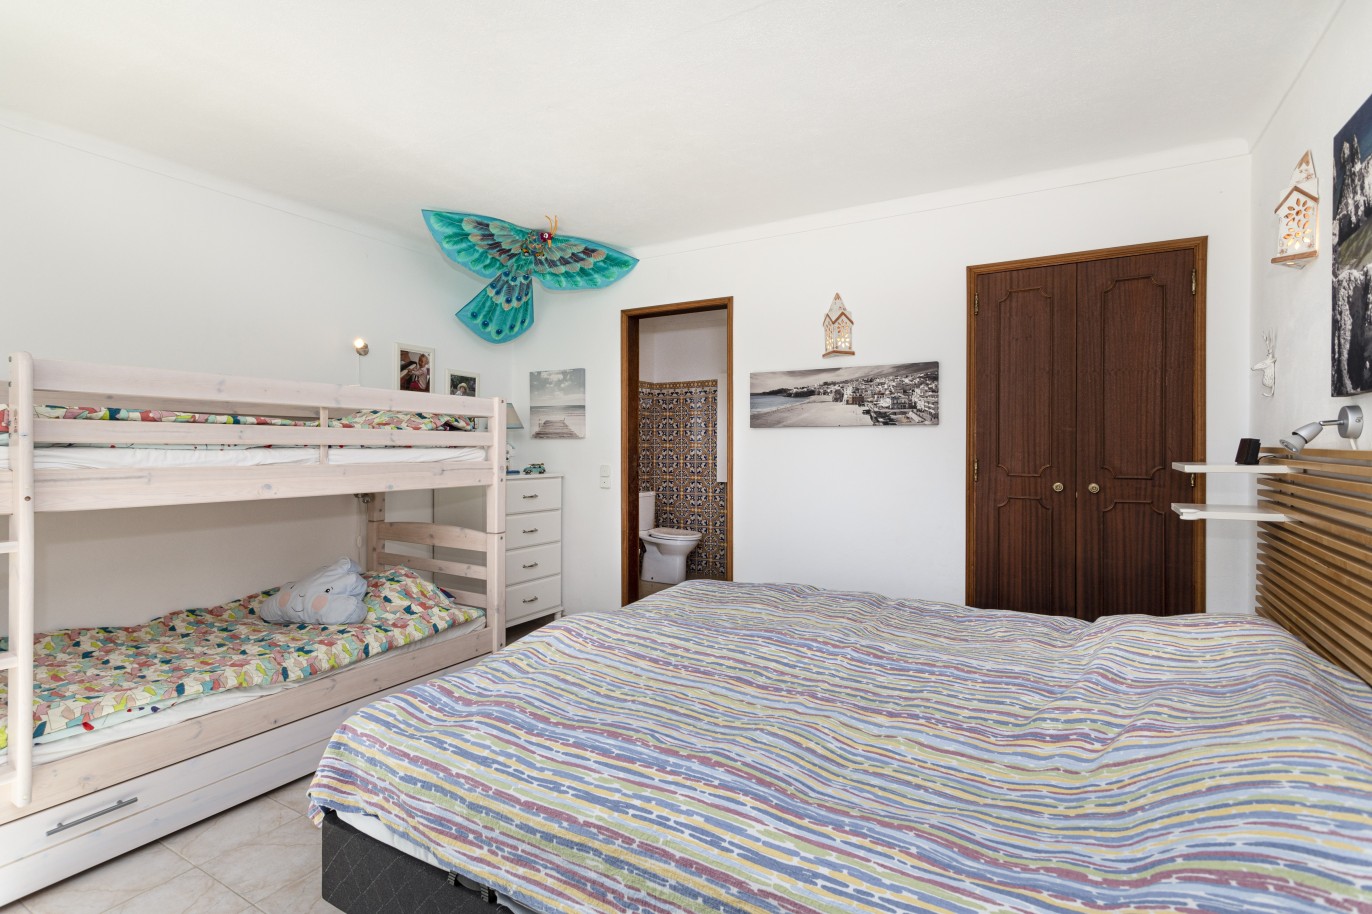 5 bedroom villa with pool and sea view, for sale in Estoi, Algarve_230484